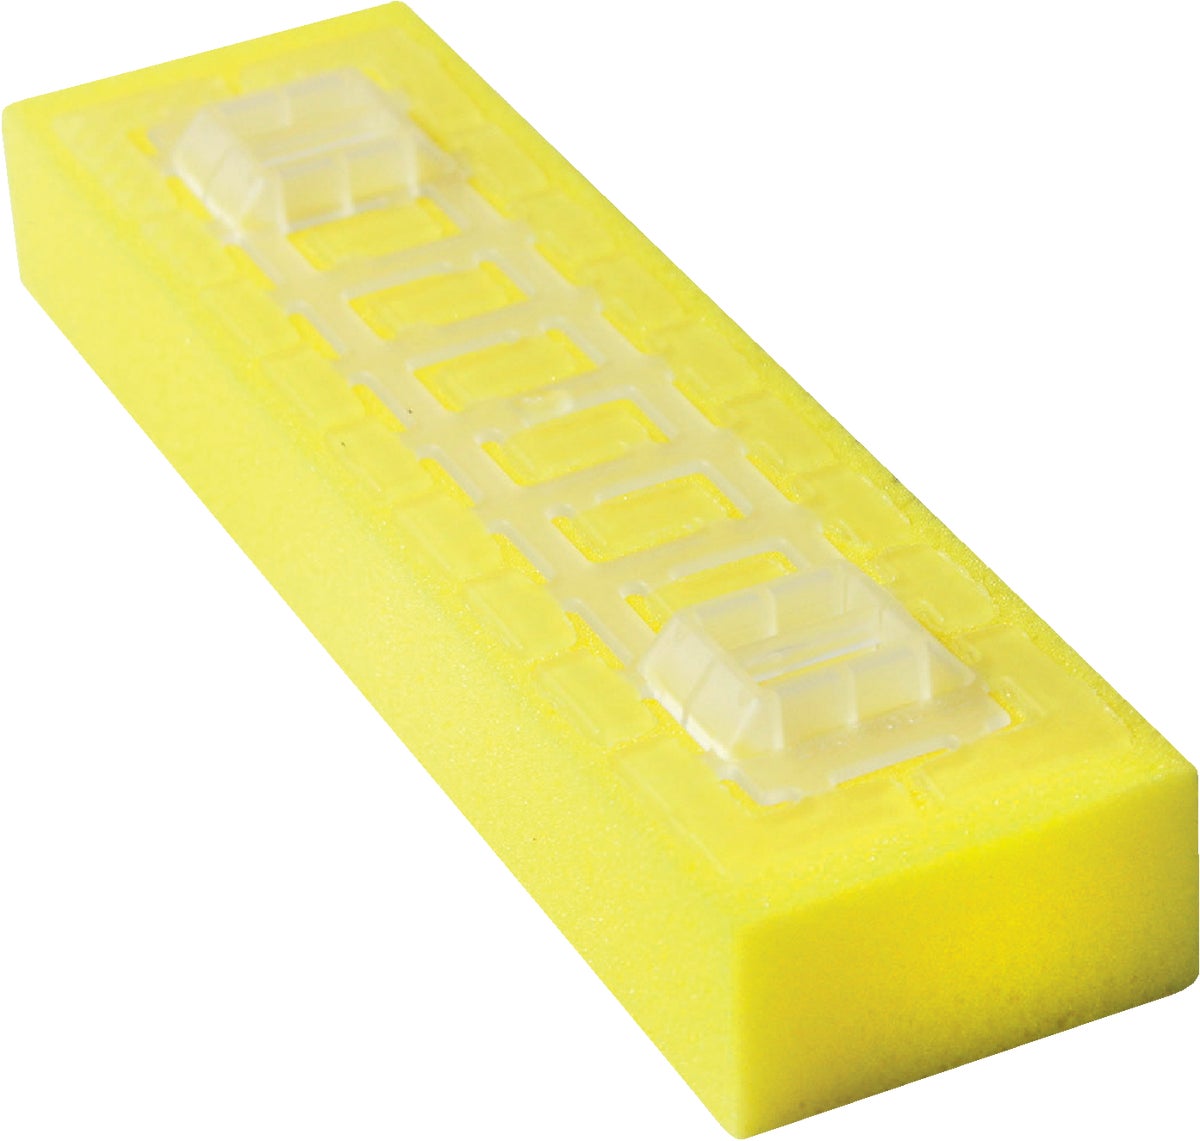 Buy Do it Best Sponge Mop Refill